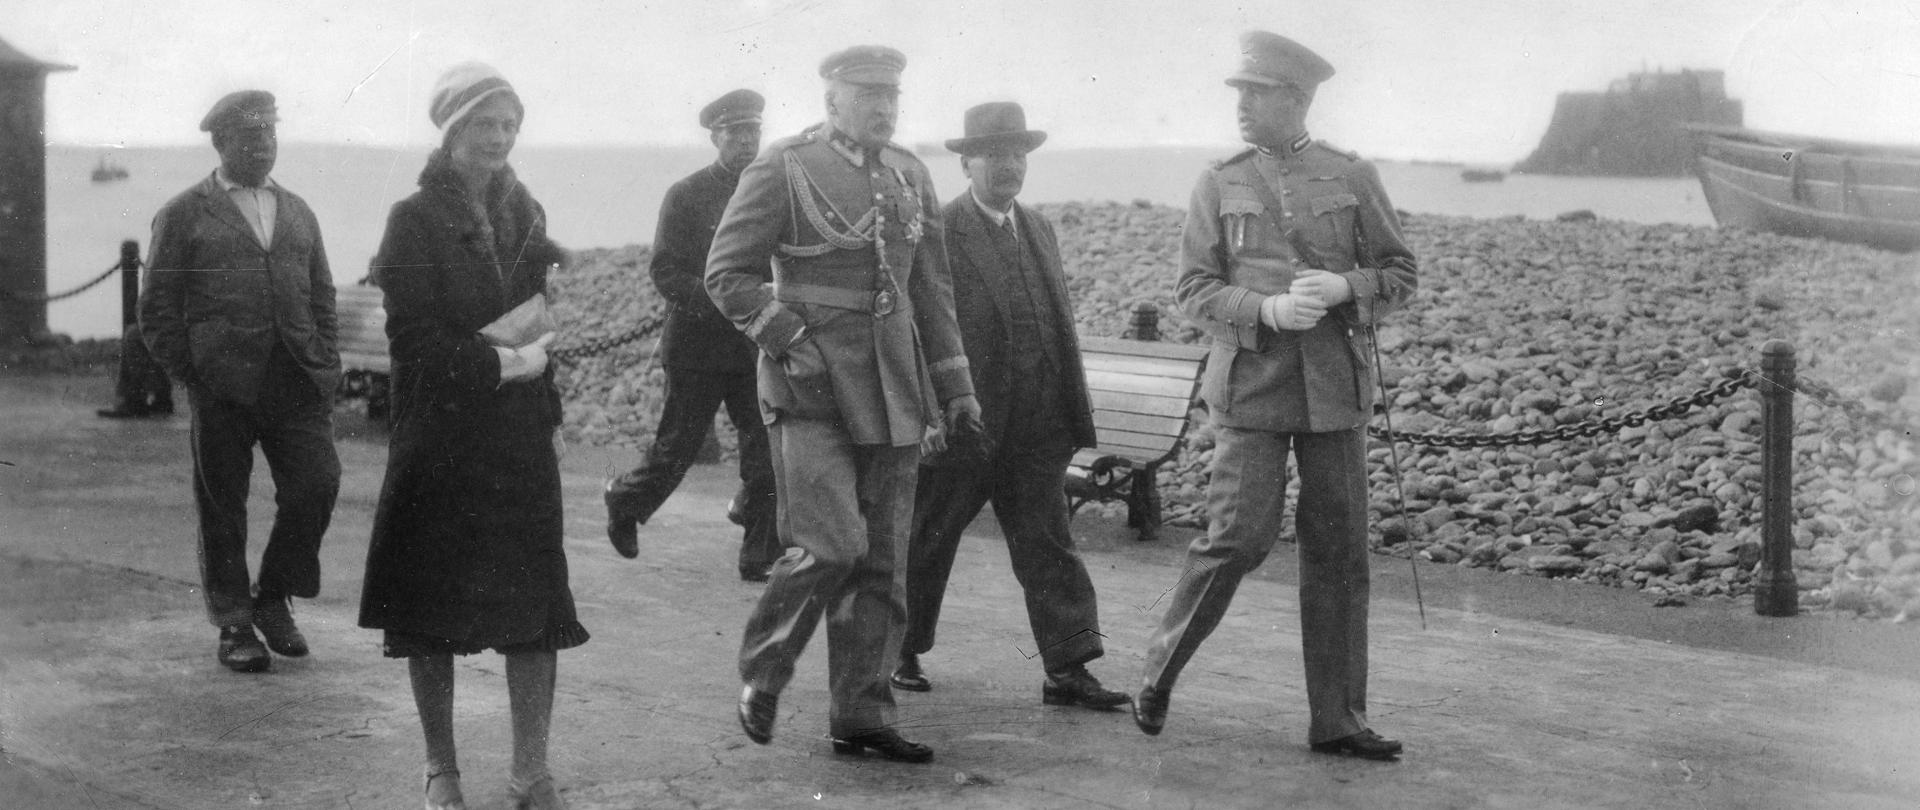 Narodowe Archiwum Cyfrowe. Marszałek Józef Piłsudski w towarzystwie dr. płk. Marcina Woyczyńskiego (2. z prawej) i dr. Eugenii Lewickiej zwiedza okolice Funchal.
